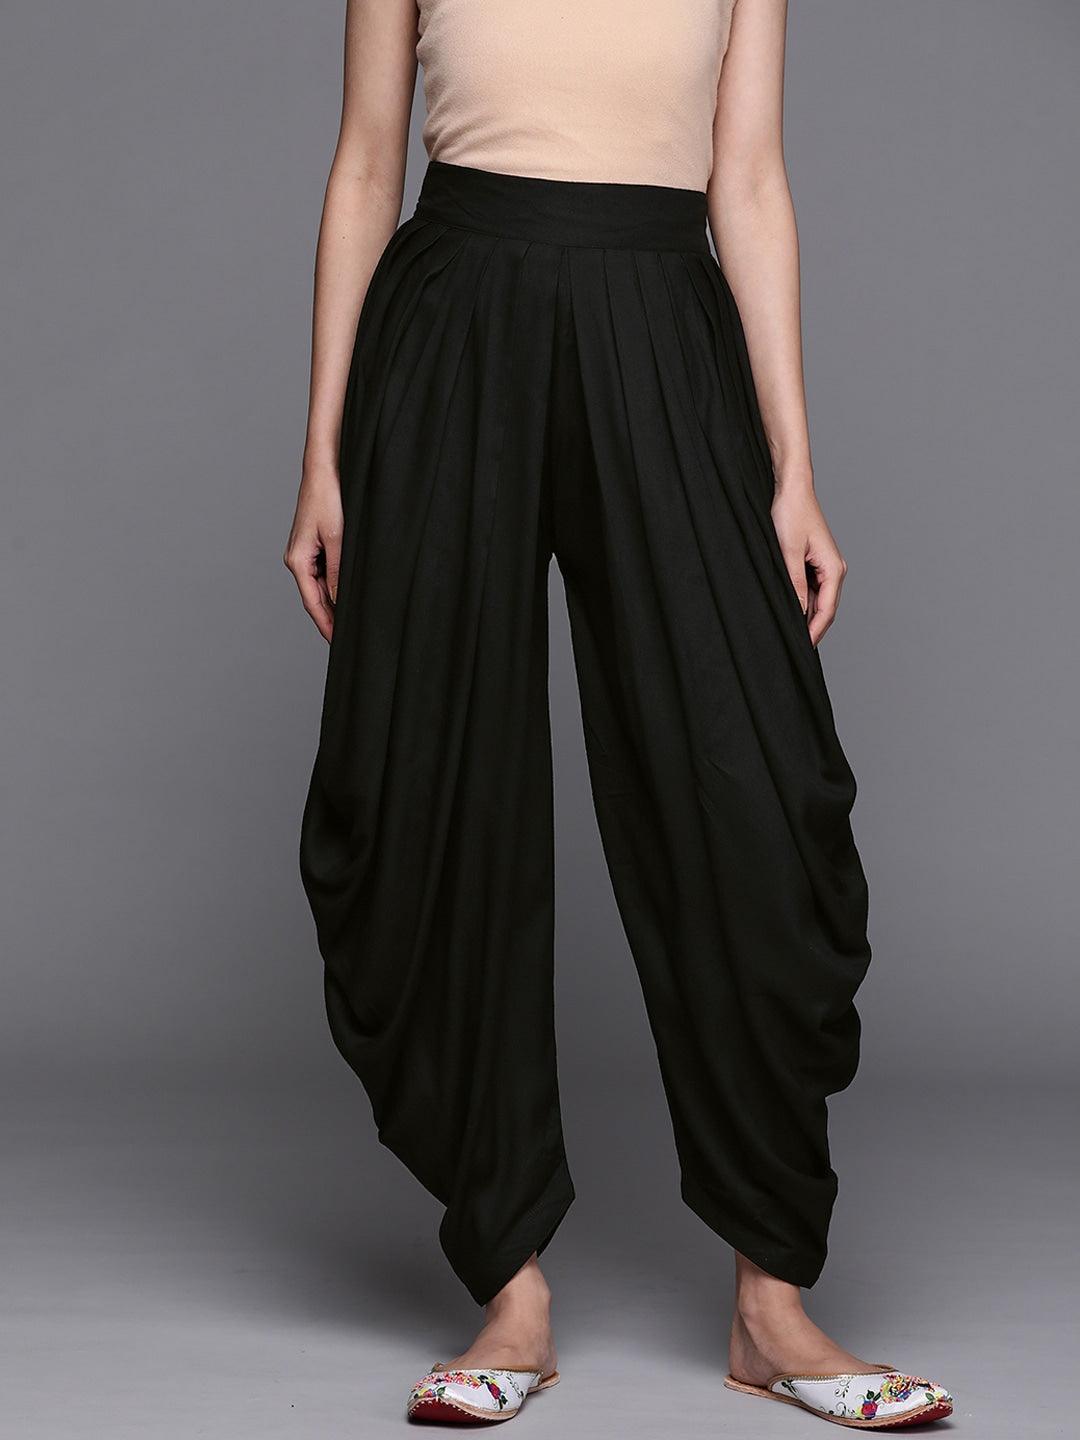 Black Solid Rayon Salwar Pants - Libas